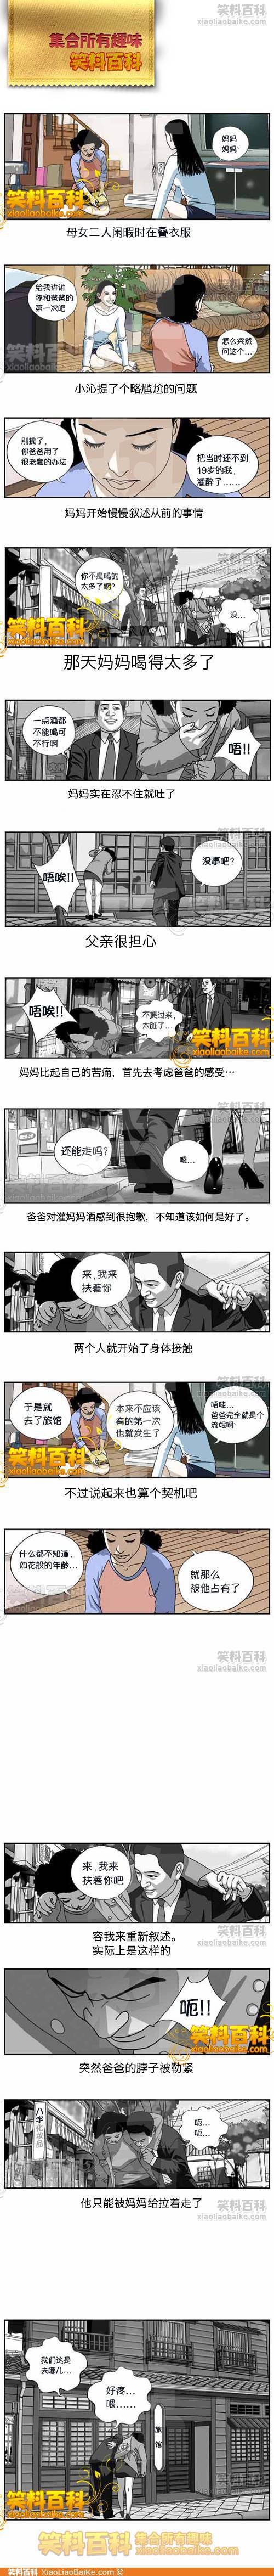 邪恶漫画爆笑囧图第24刊：邪恶